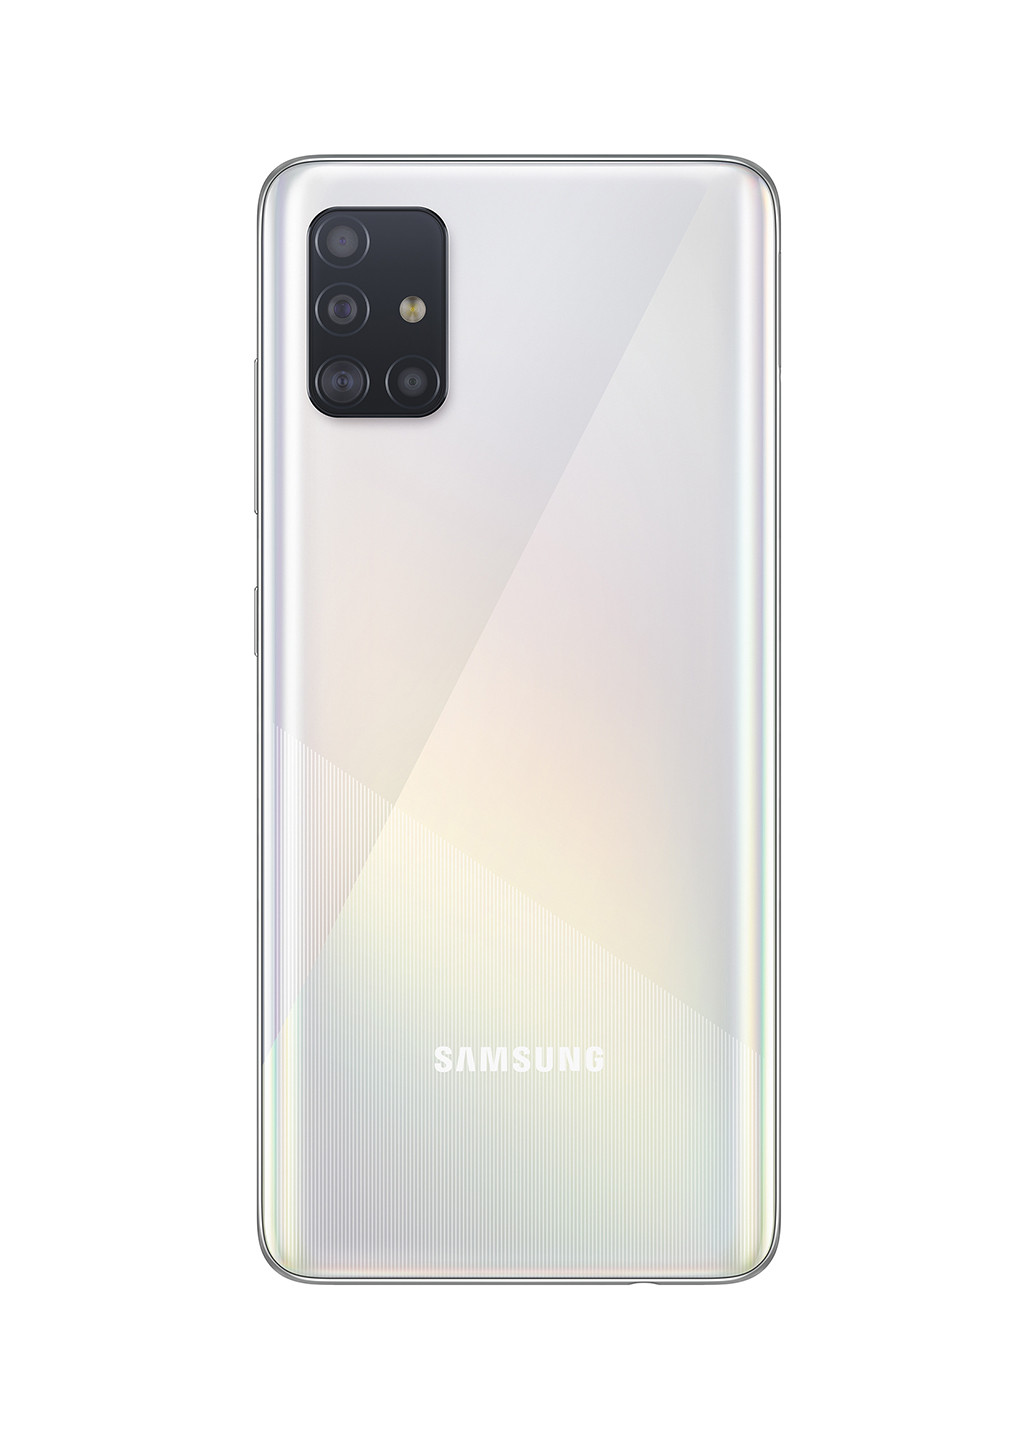 Смартфон Galaxy A51 6 / 128GB Prism Crush White (SM-A515FZWWSEK) Samsung Galaxy A51 6/128GB Prism Crush White (SM-A515FZWWSEK) білий